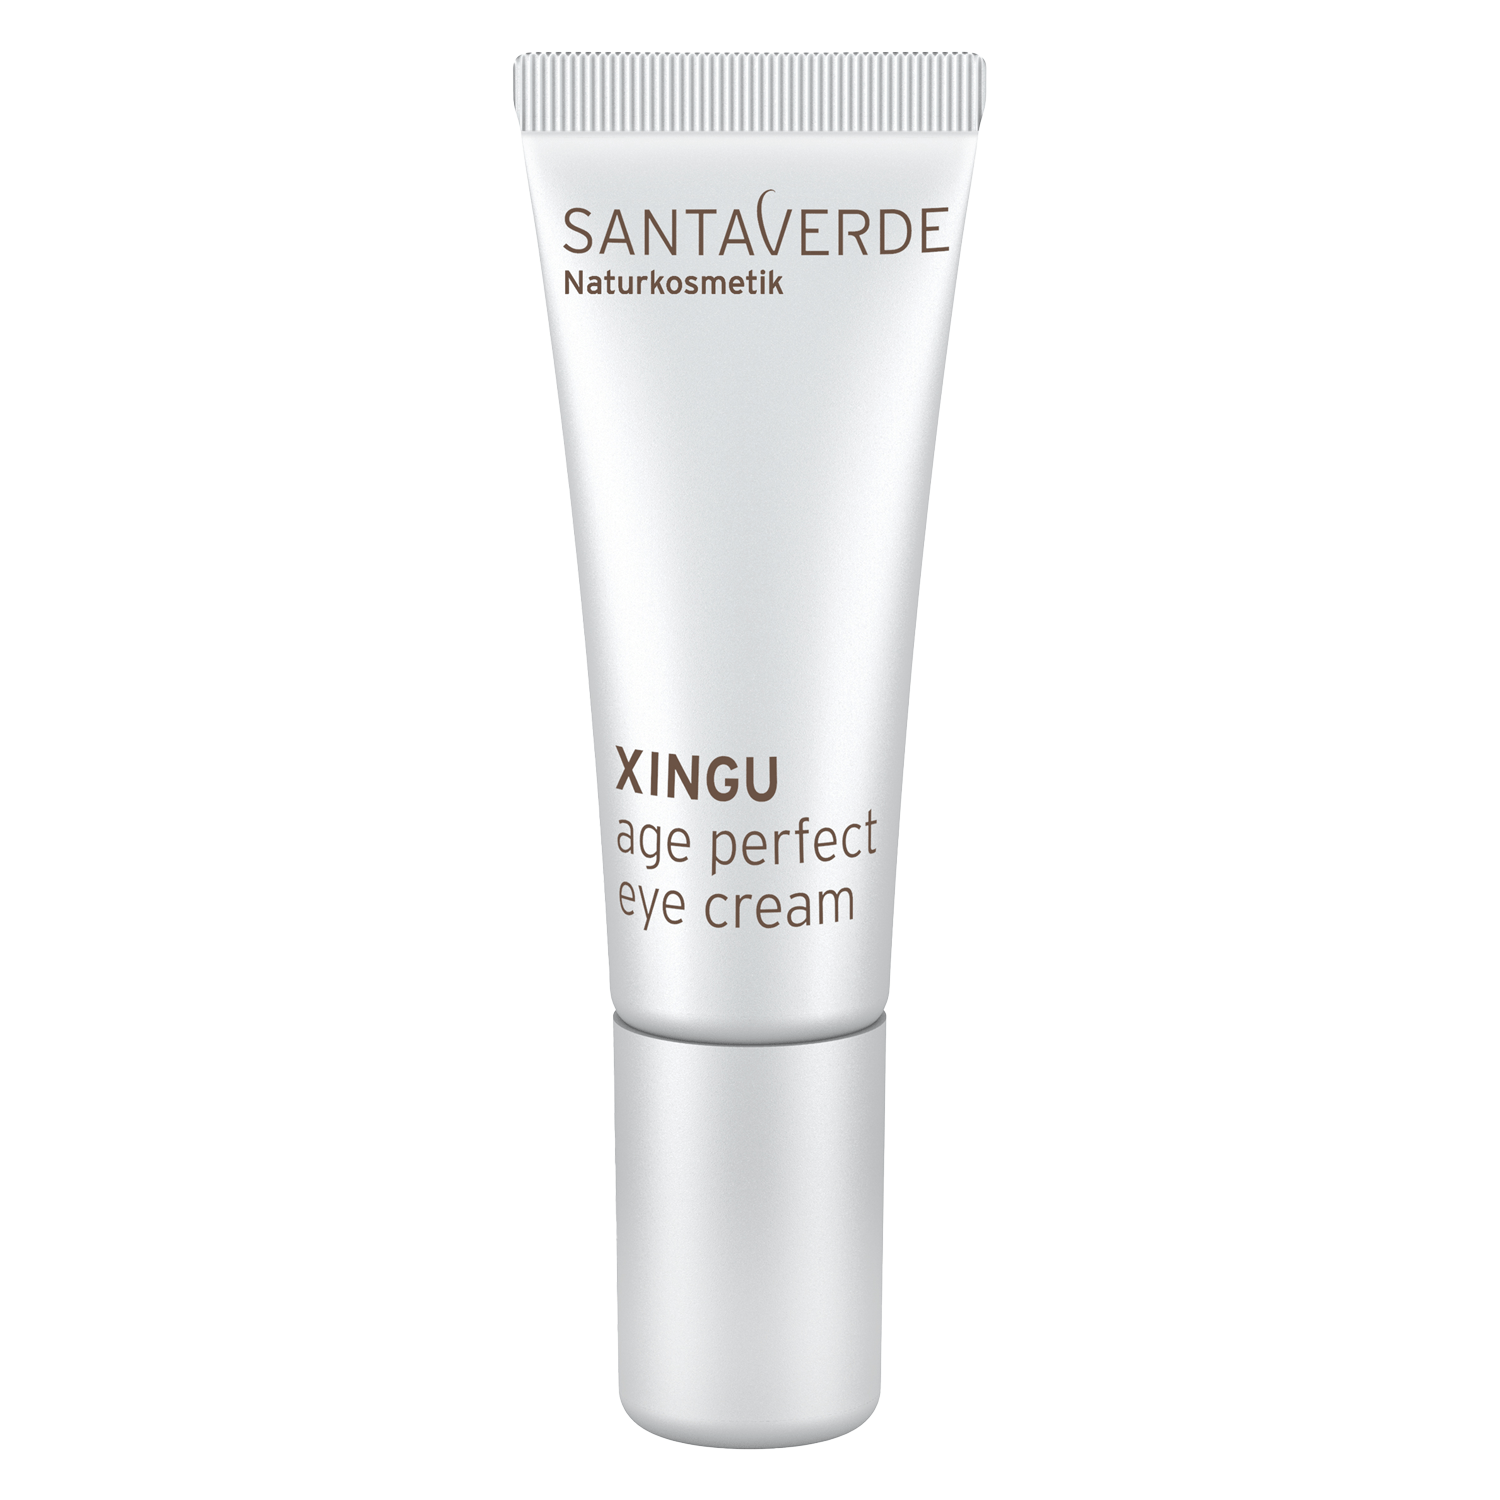 Produktbild von XINGU - age perfect eye cream